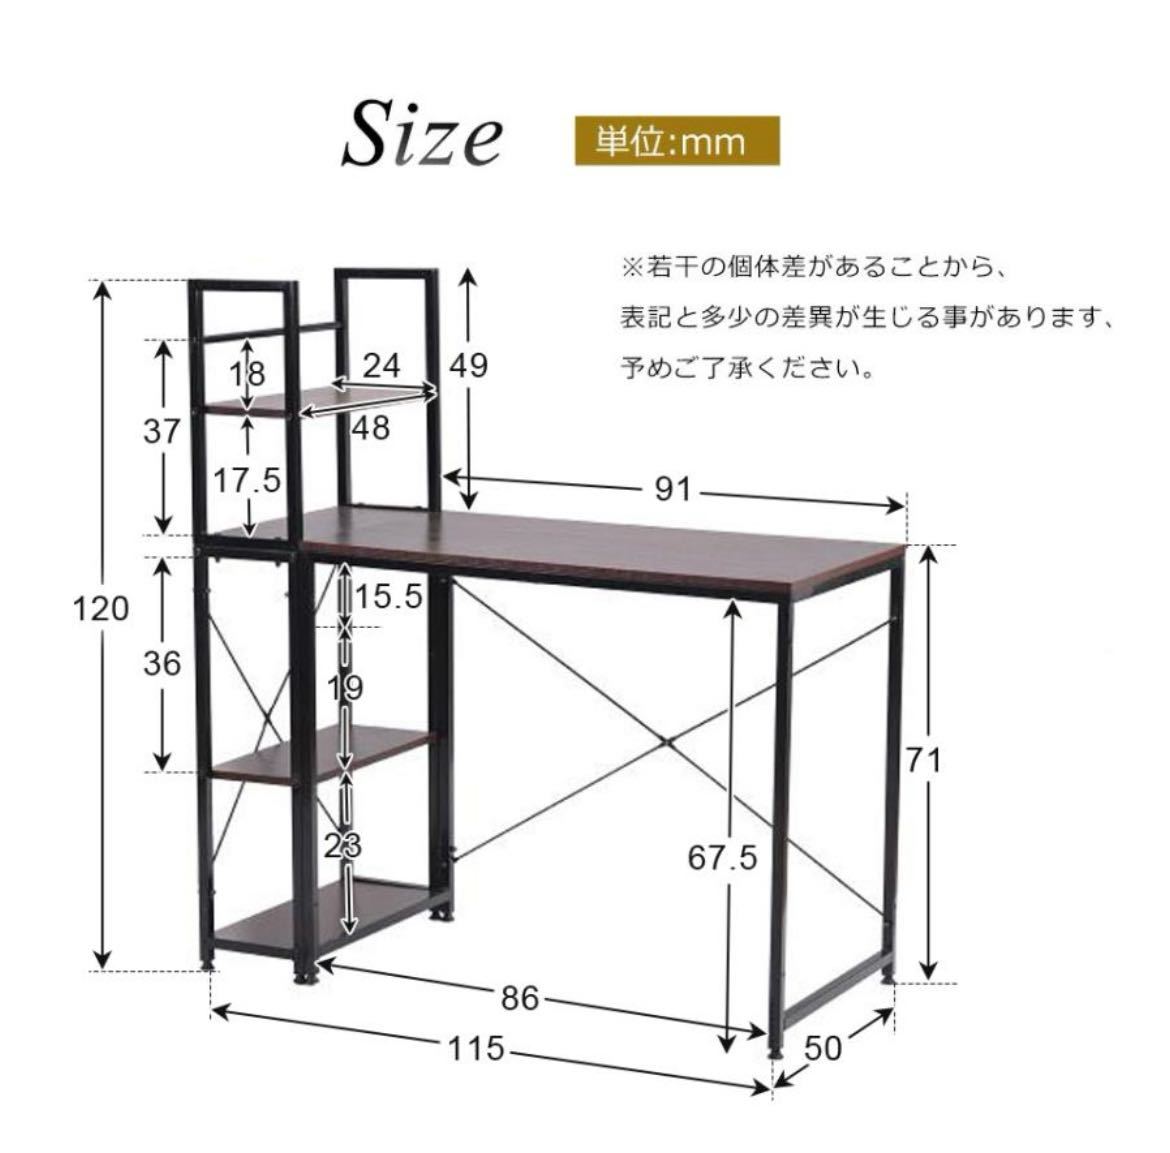 [ время ограничено 1000 иен снижение цены ] компьютерный стол цельный раздел обе для стол стол кабинет стол из дерева высокий место хранения имеется офис стол [2 выбор цвета возможно ]